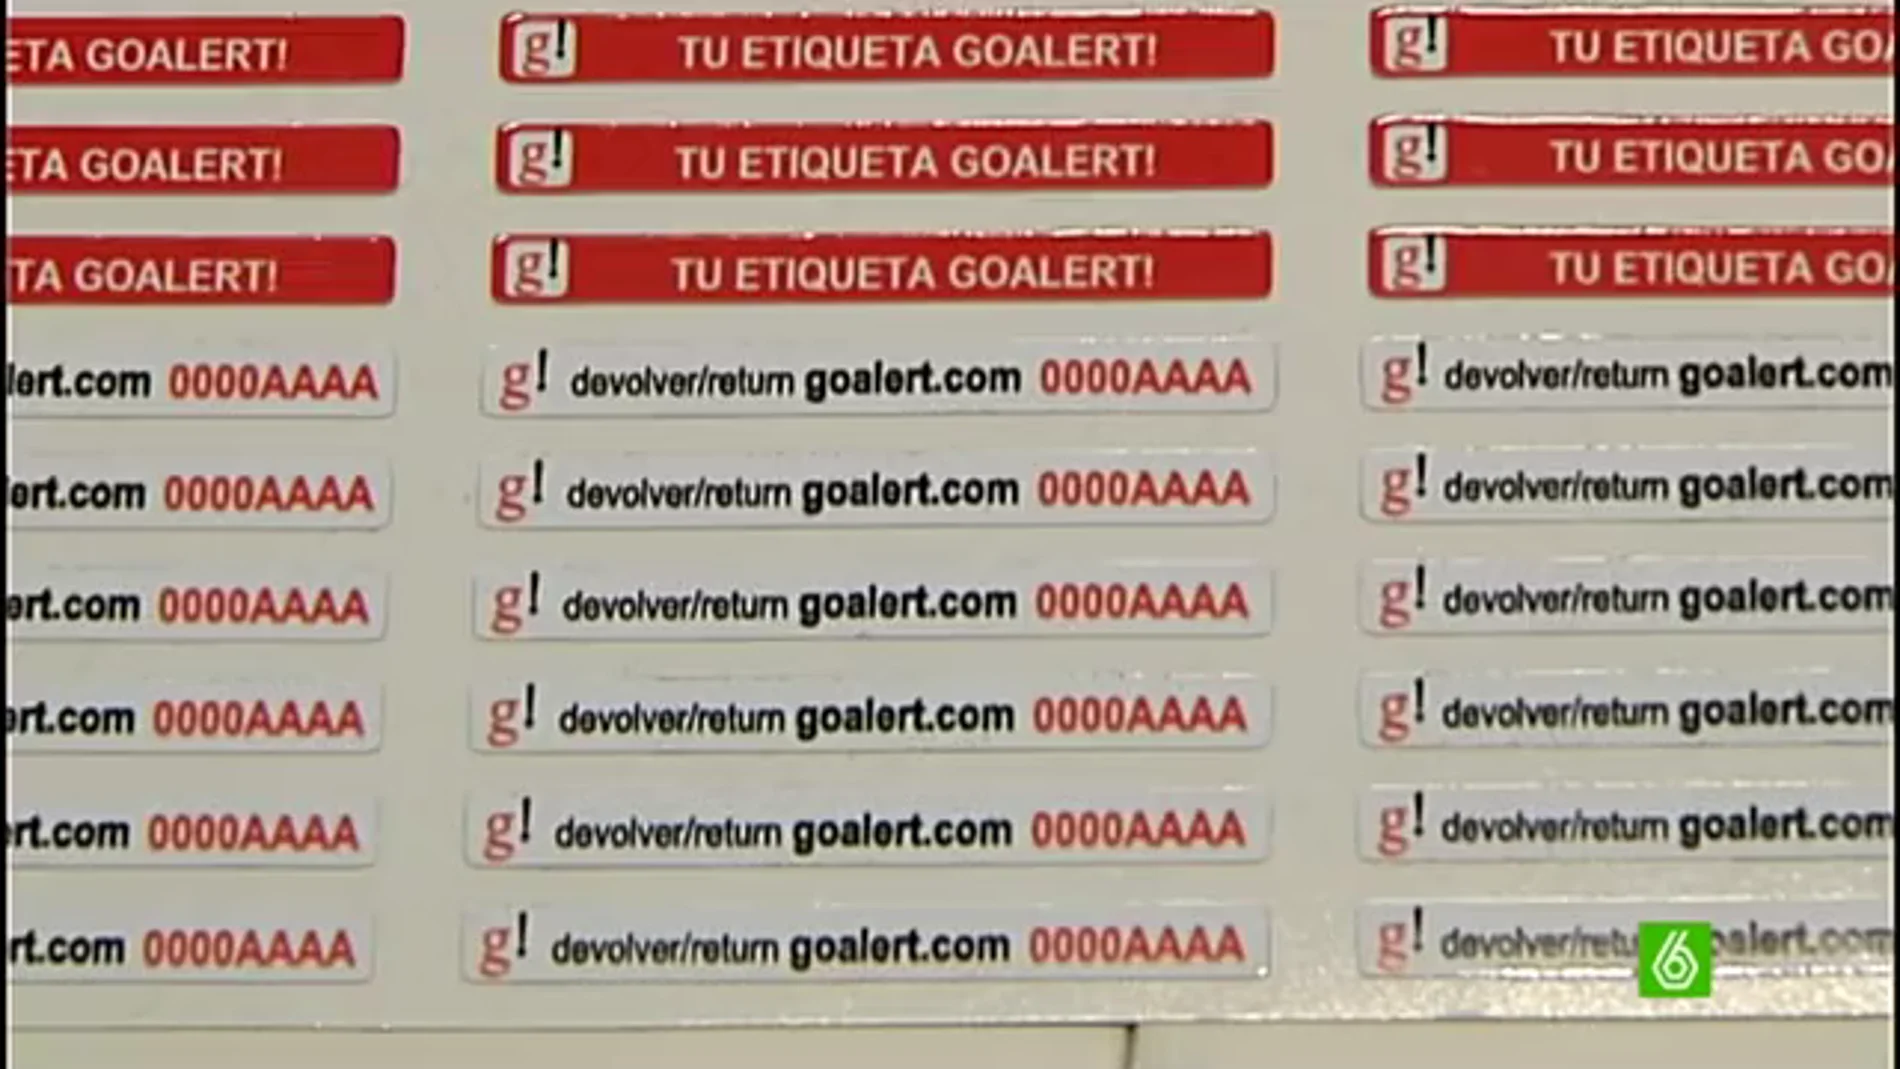 La etiqueta Goalert permite recuperar el equipaje perdido sin facilitar datos personales